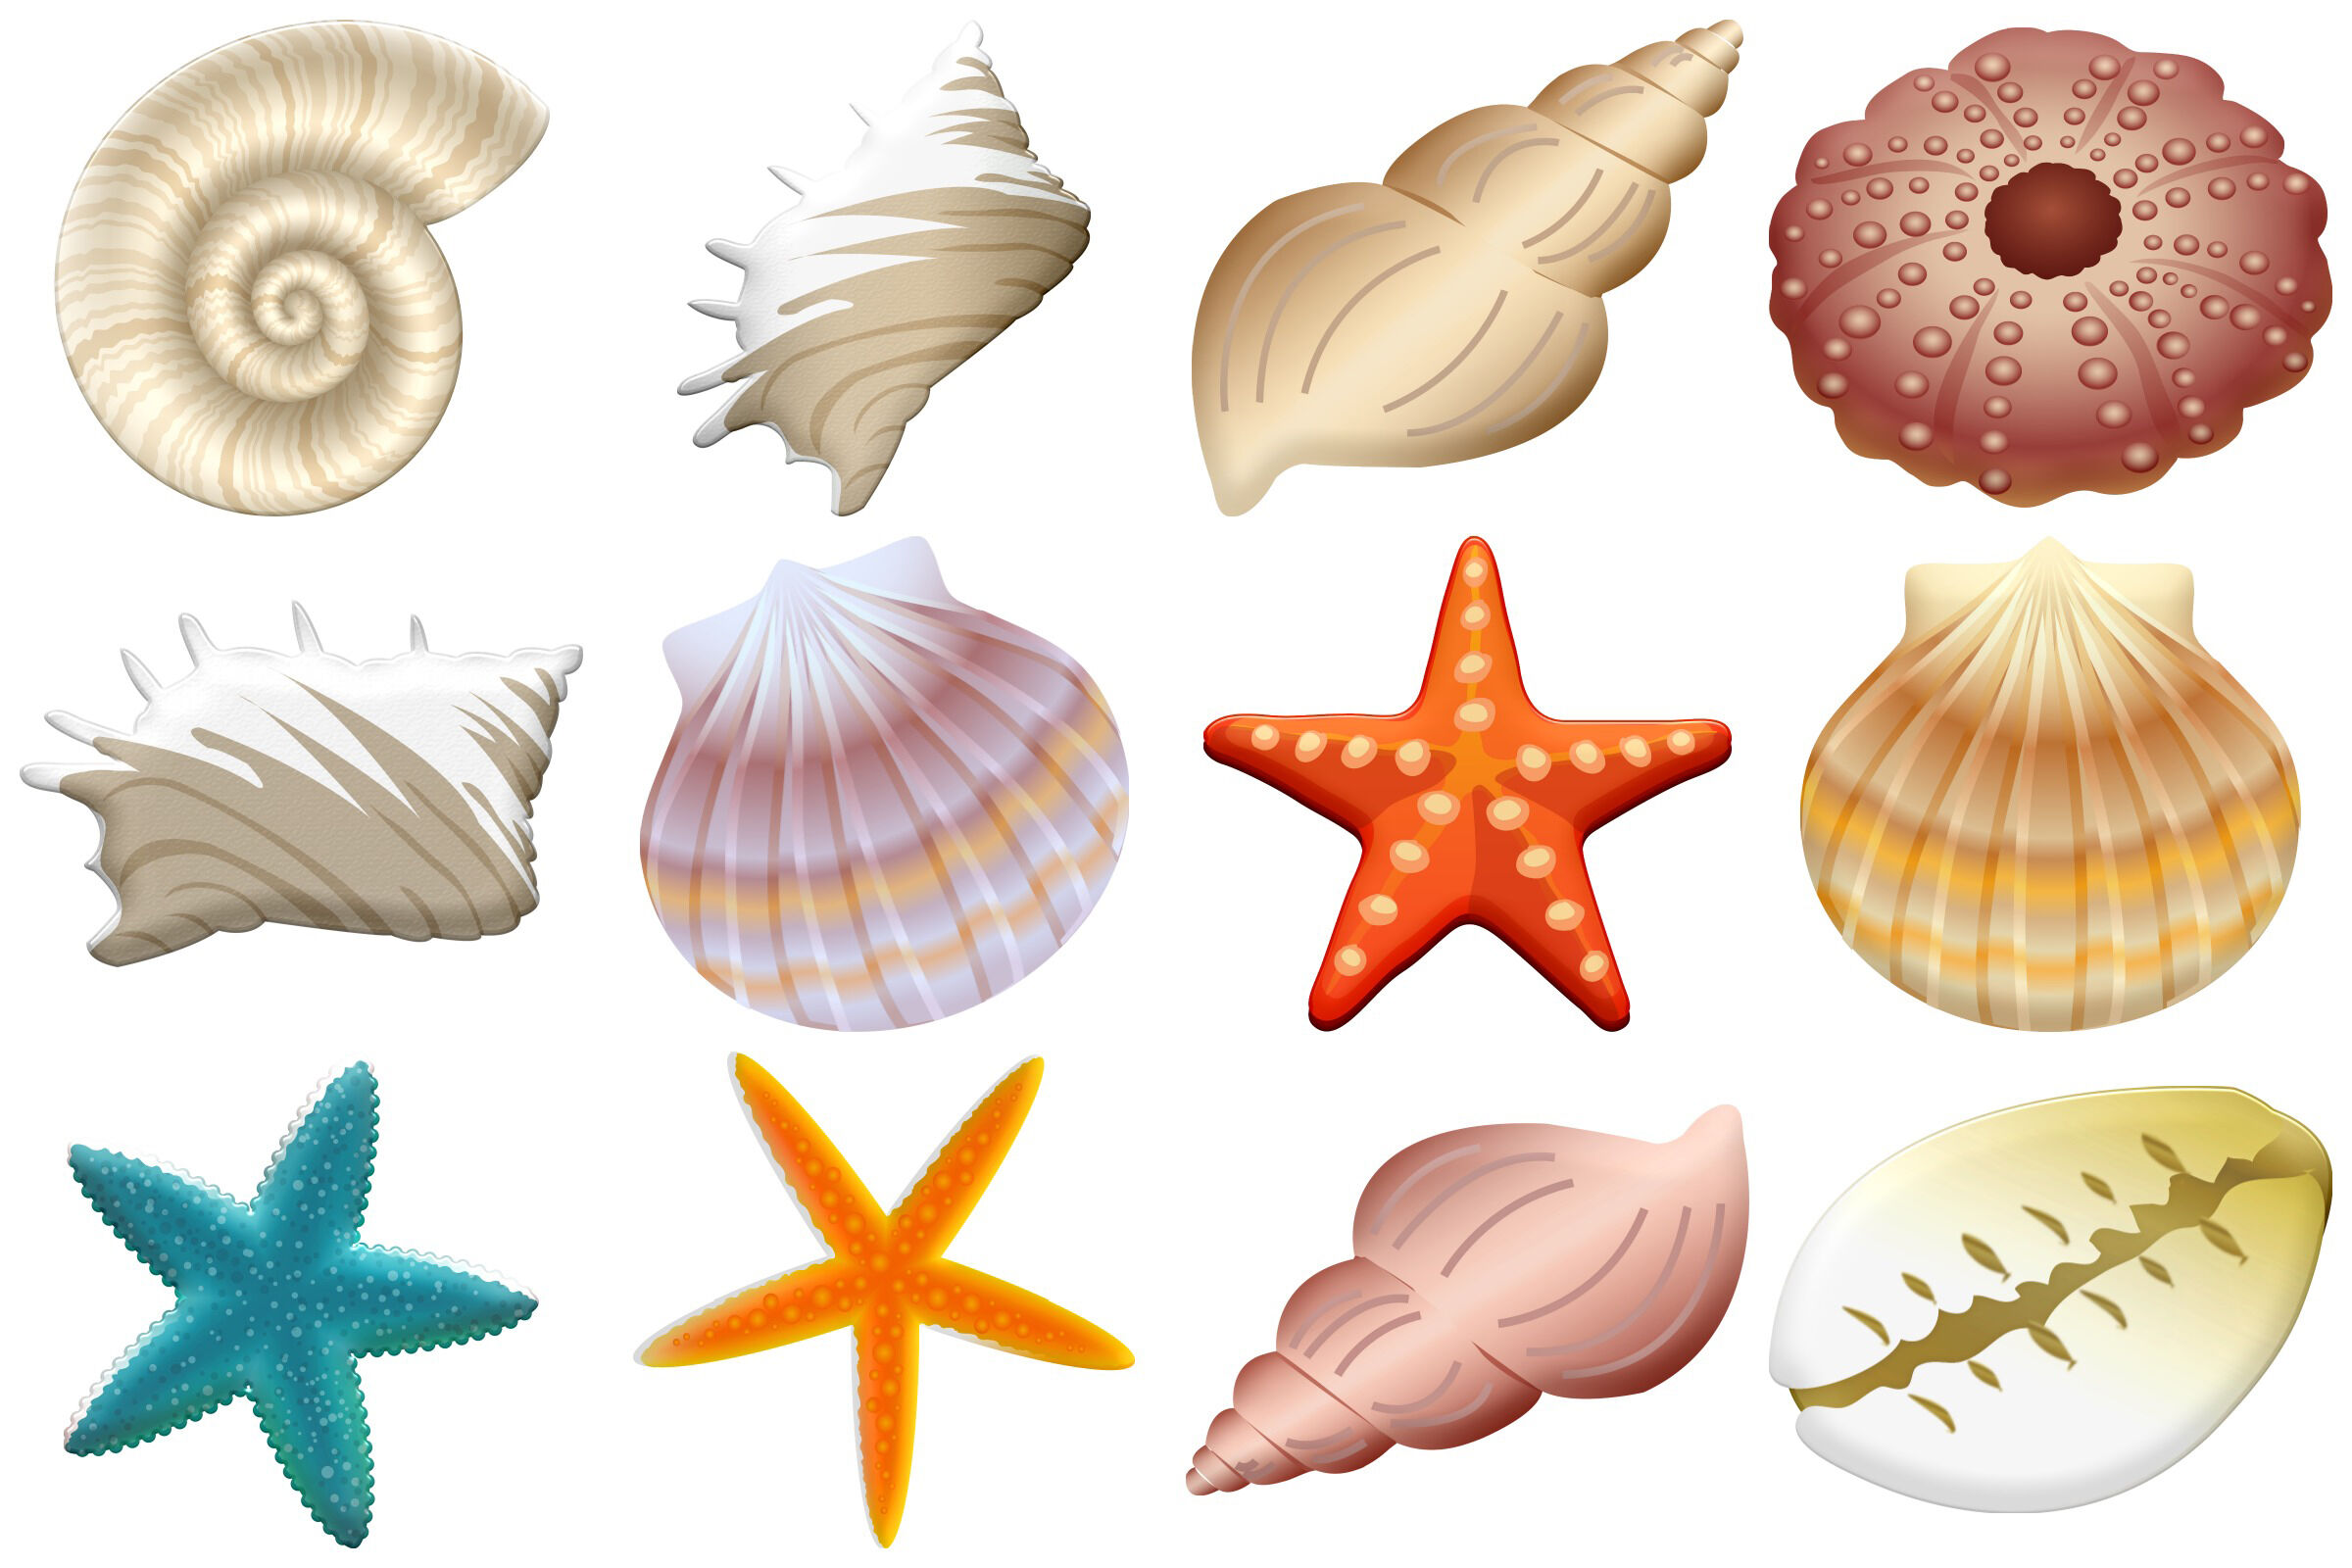 clip art sea shells